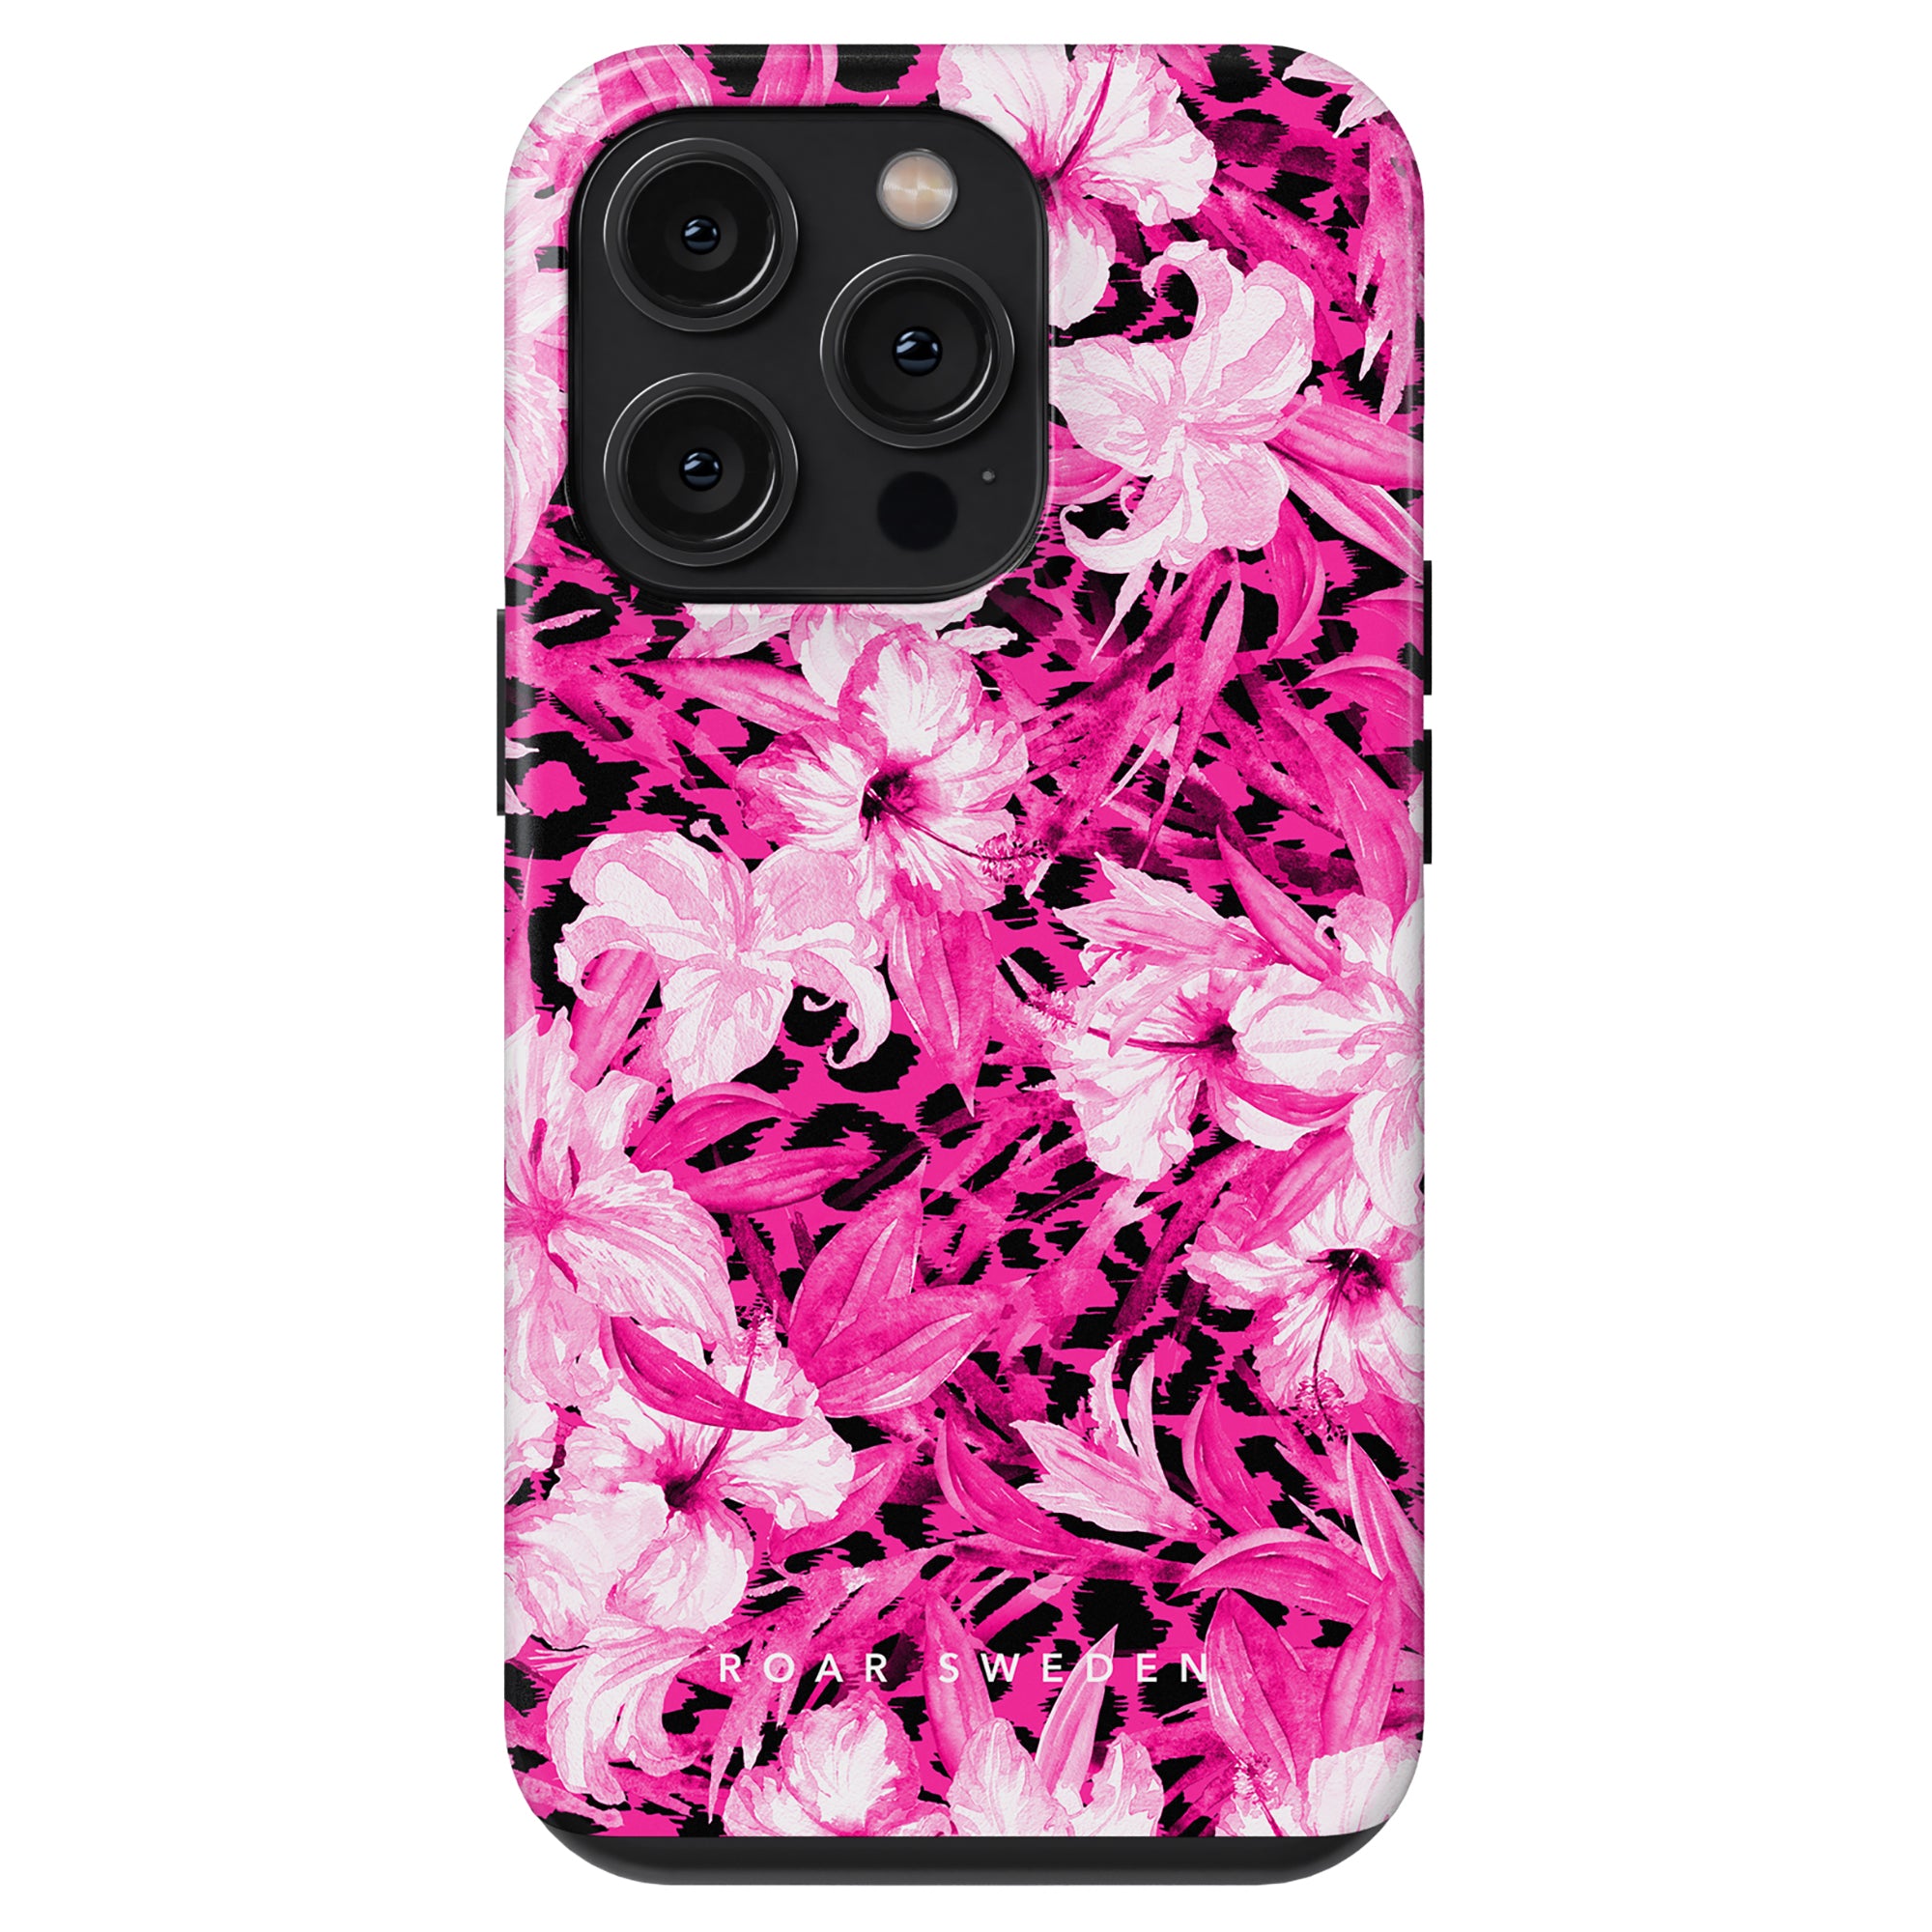 Ett elegant blommigt fodral med en perfekt symbios av rosa och svart för Hibiscus Leo - Tough fodral.